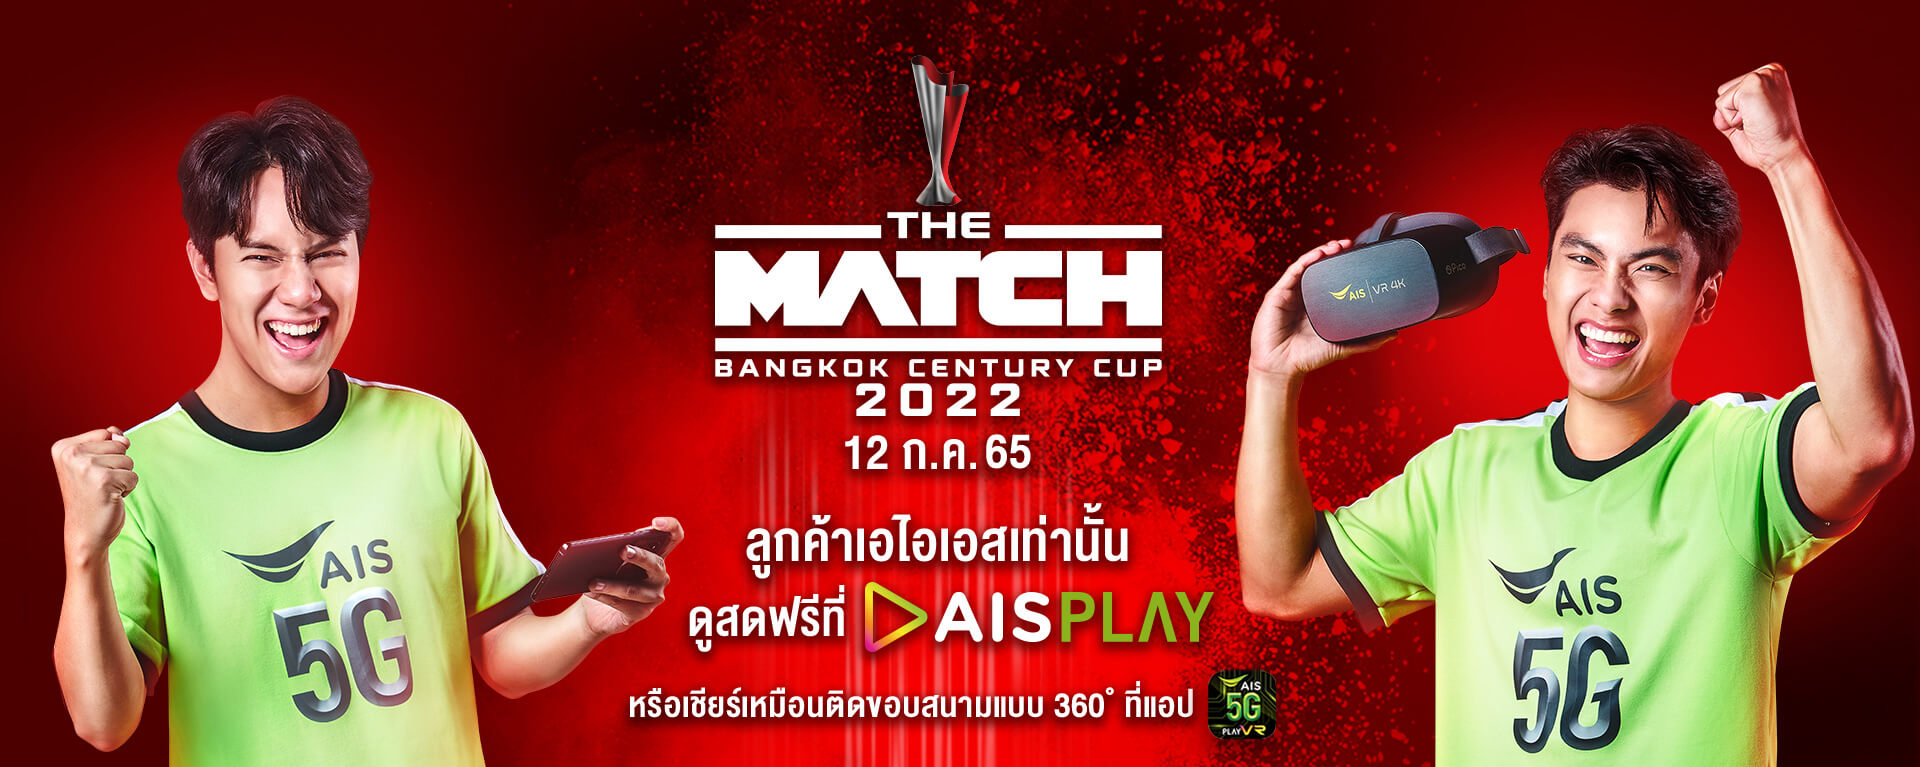 รับสิทธิ์ชม The Match Bangkok Century Cub 2022ผ่าน AIS Play สด ฟรี เฉพาะชาว AIS